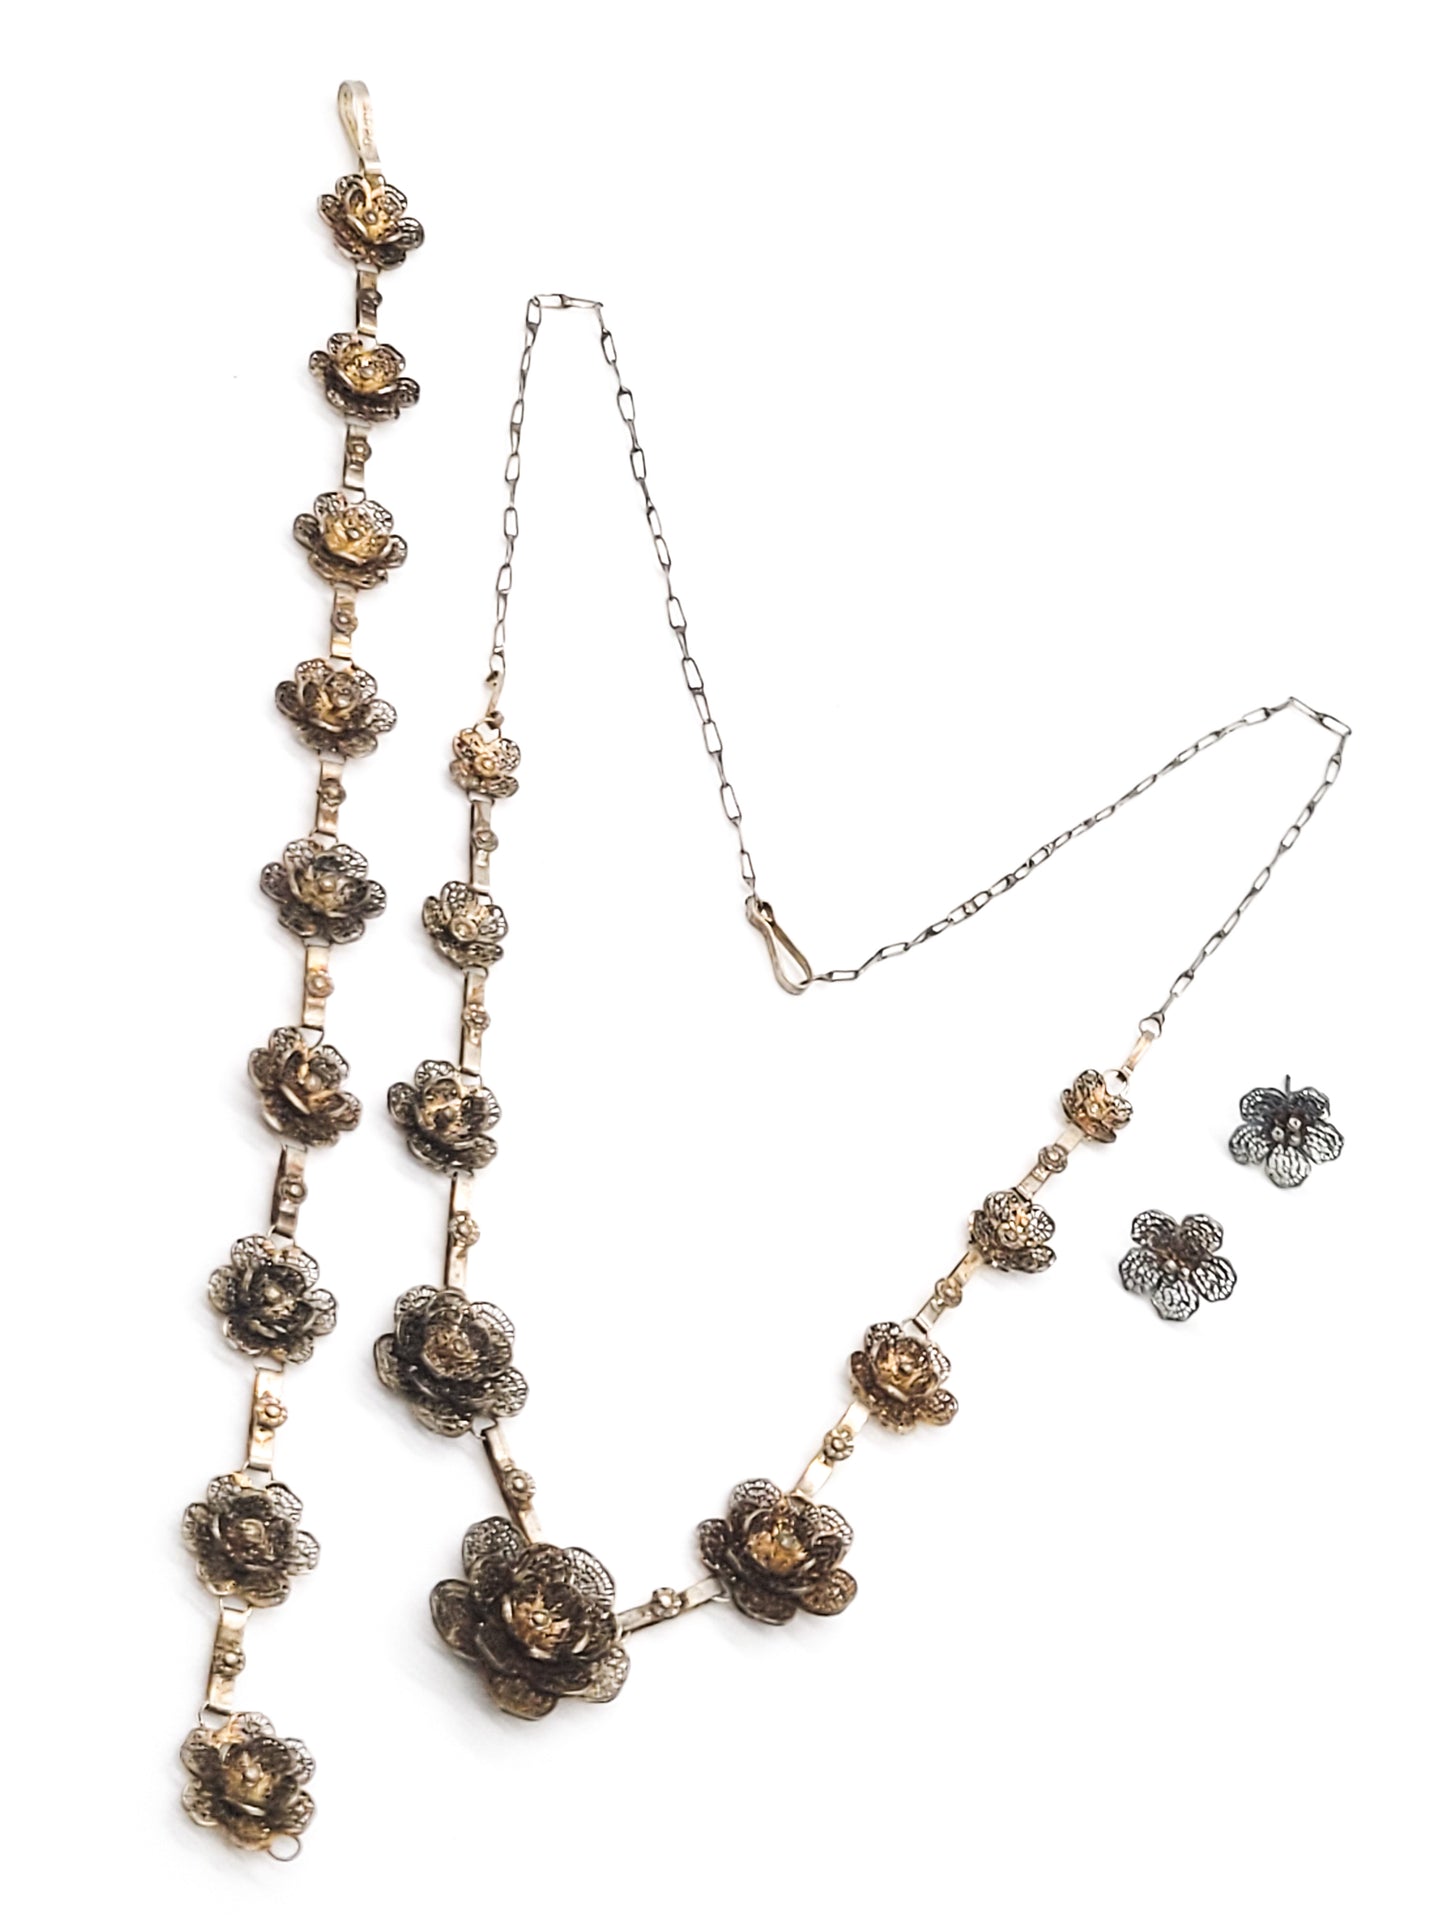 Spun silver flower cannetile vintage necklace set 950 sterling sliver demi parure